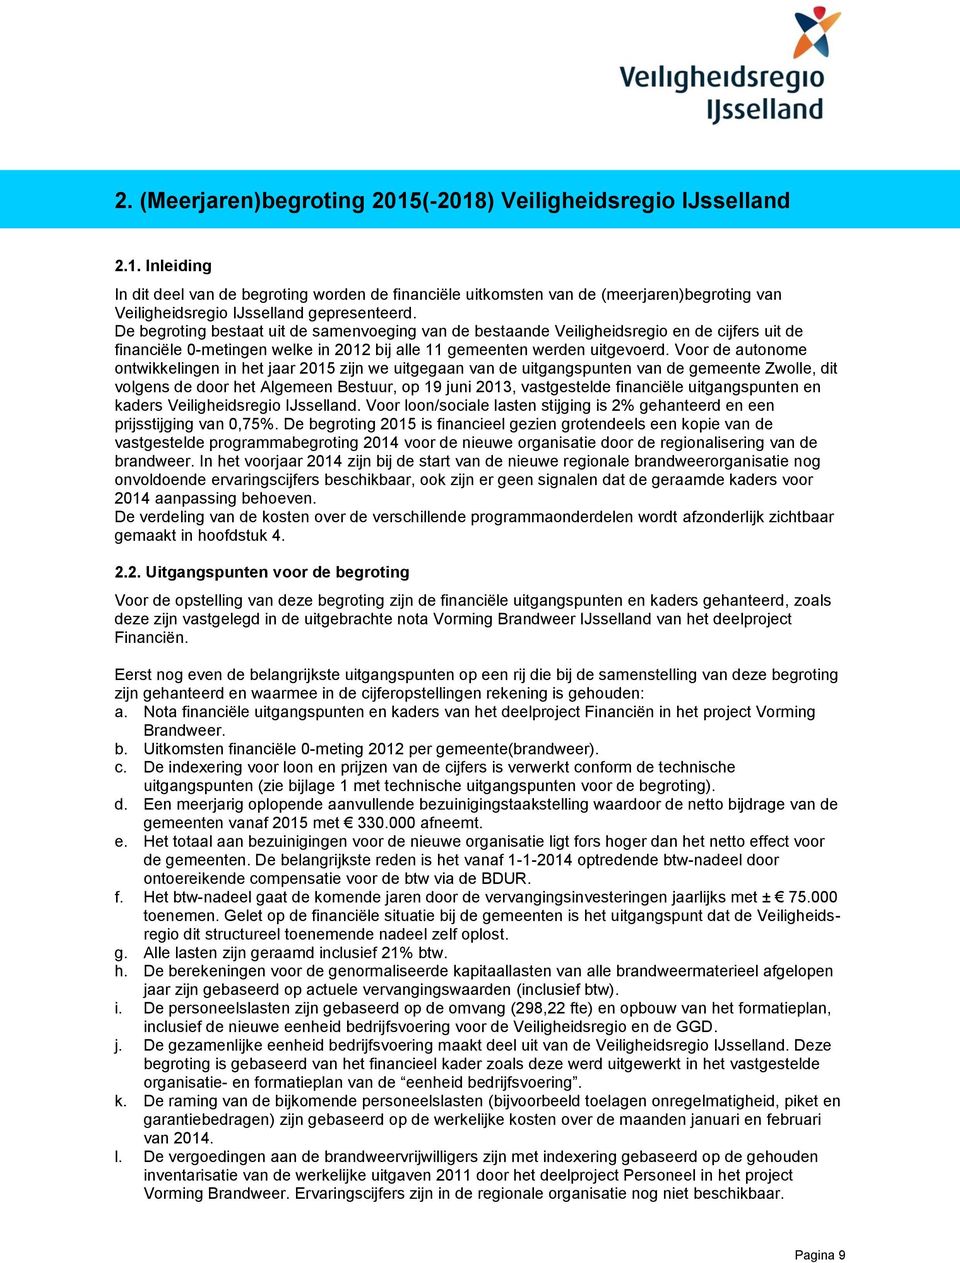 Voor de autonome ontwikkelingen in het jaar 2015 zijn we uitgegaan van de uitgangspunten van de gemeente Zwolle, dit volgens de door het Algemeen Bestuur, op 19 juni 2013, vastgestelde financiële